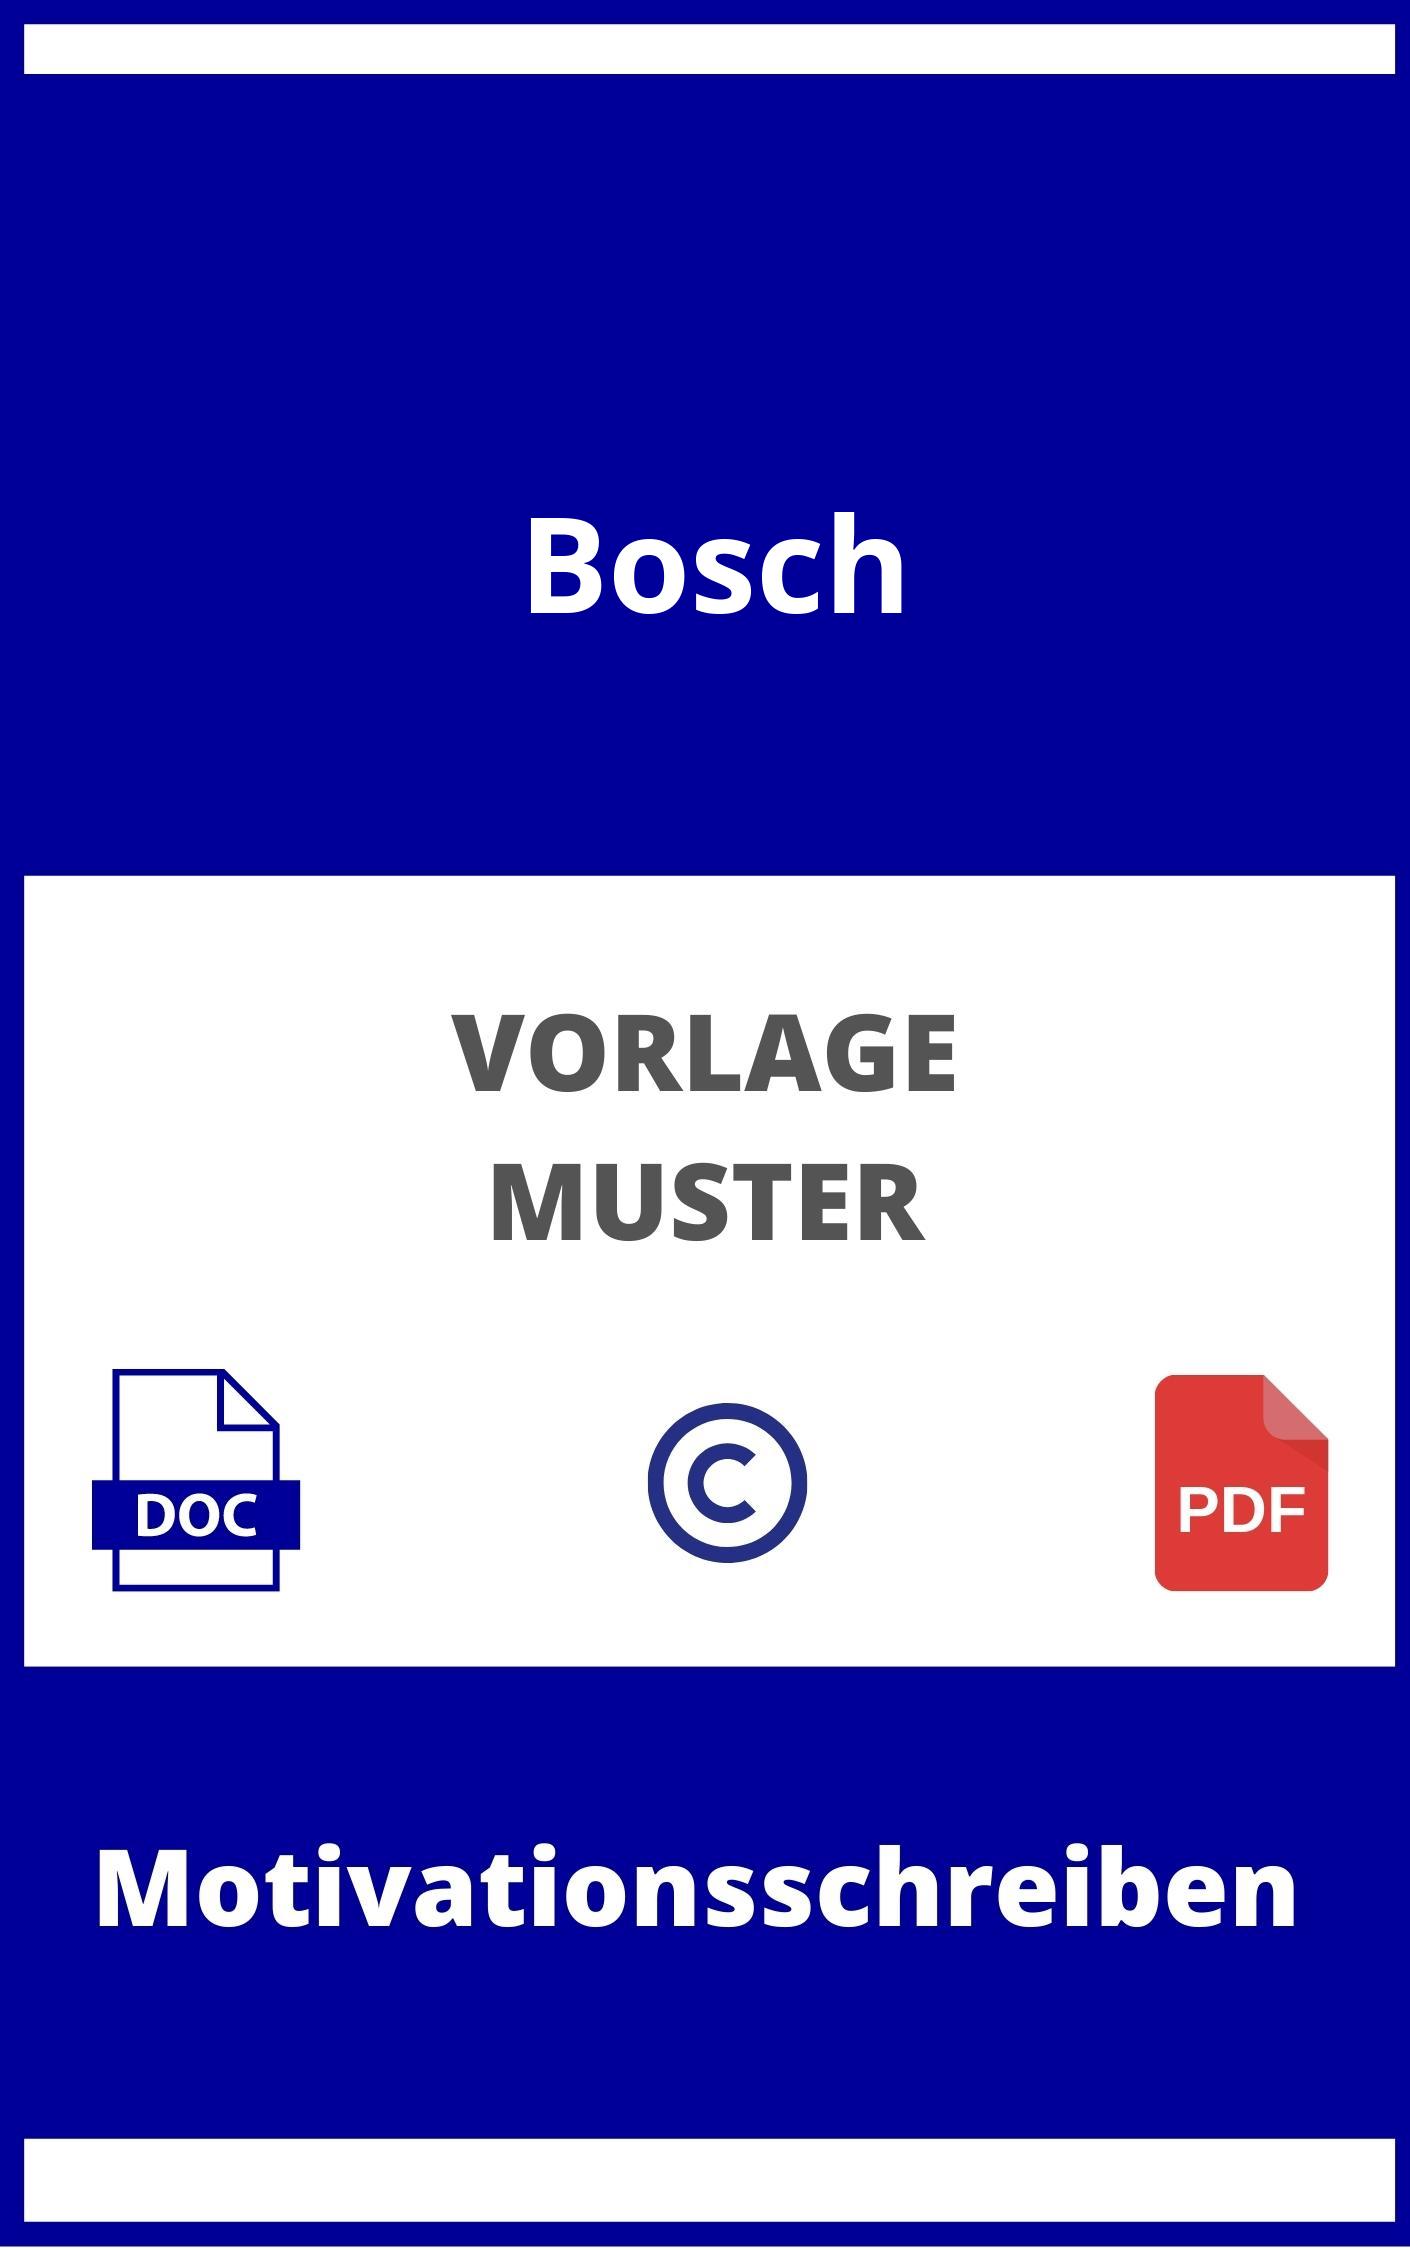 Motivationsschreiben Bosch